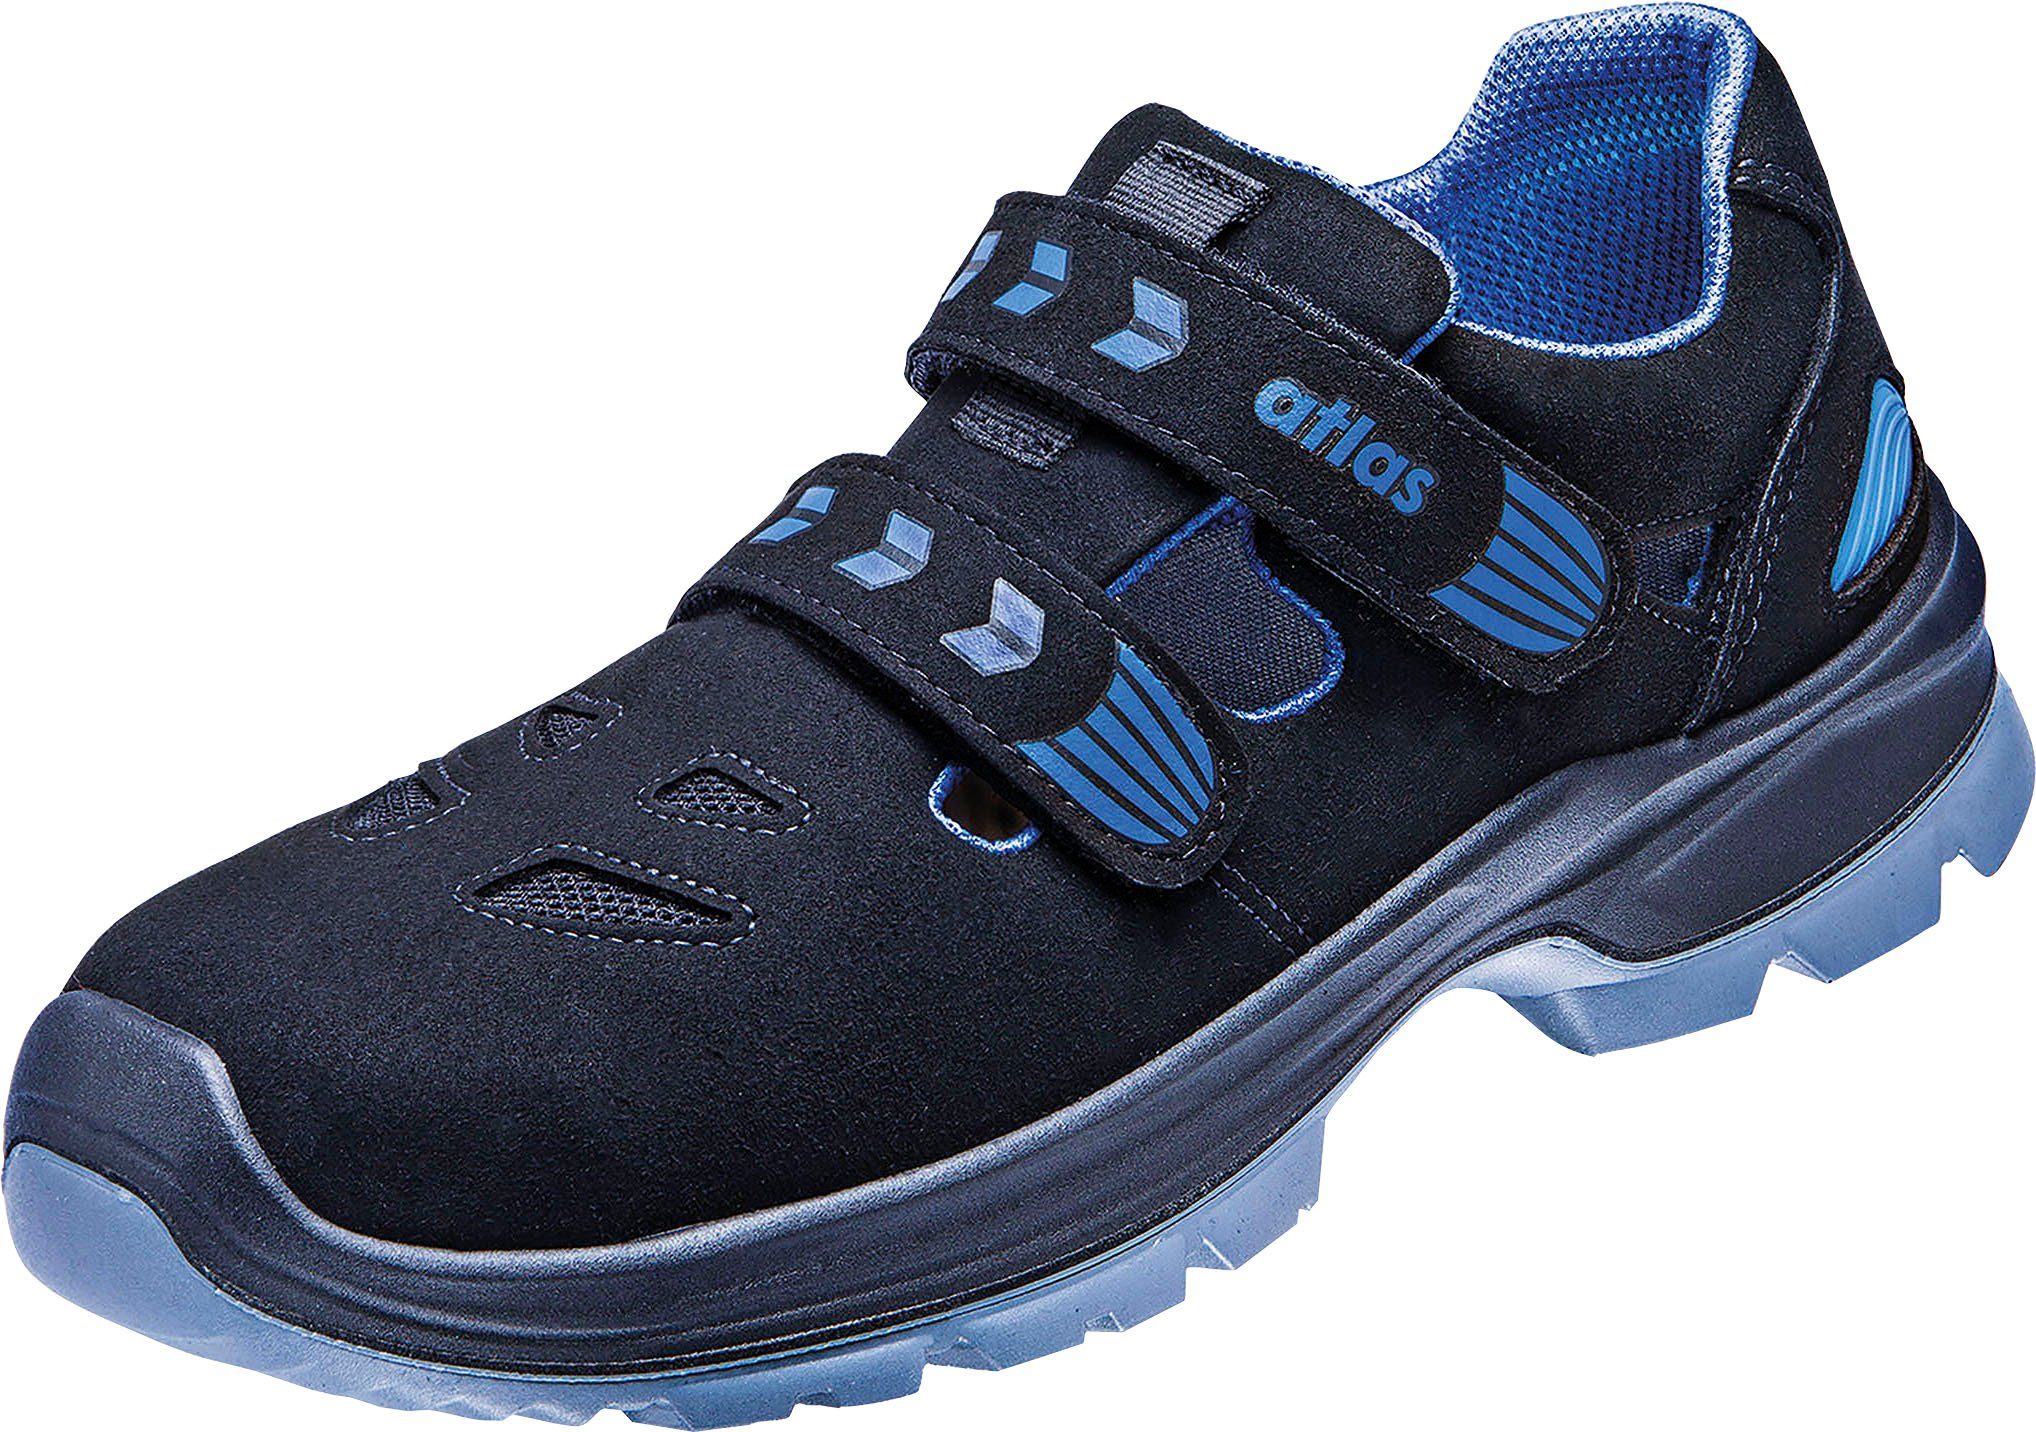 Schuhe Schuhweite Sicherheitsklasse S1 Sicherheitsschuh Atlas 14, Sandale, Ergo-Med 360